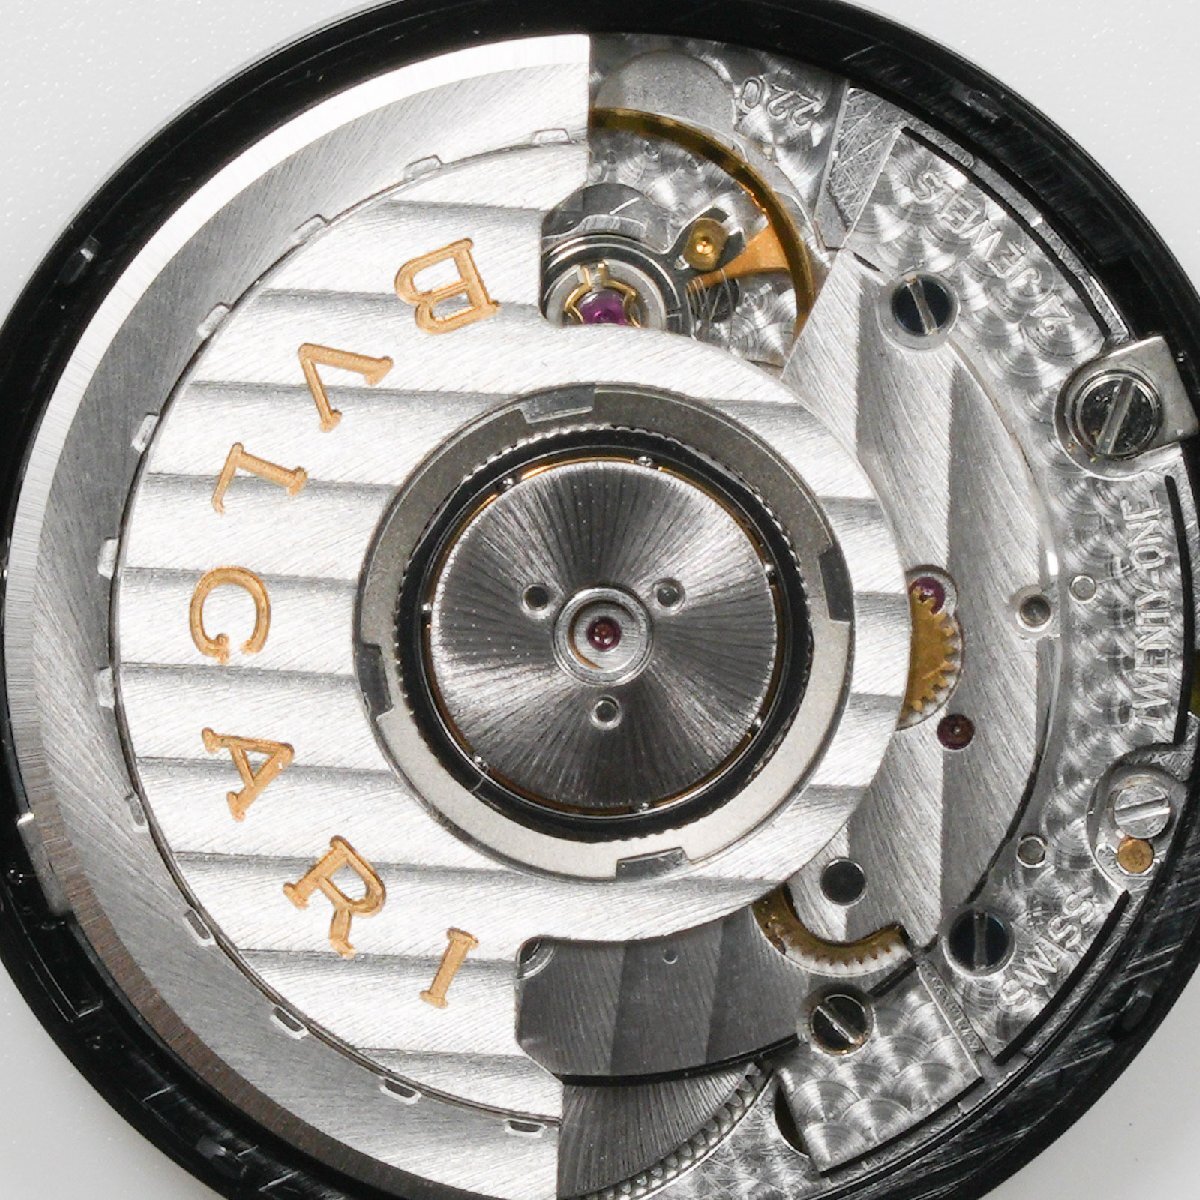 ブルガリ BVLGARI 腕時計 ムーブメント Cal. 220 ディアゴノ外し 自動巻 中古 動作品 [質イコー]_画像4